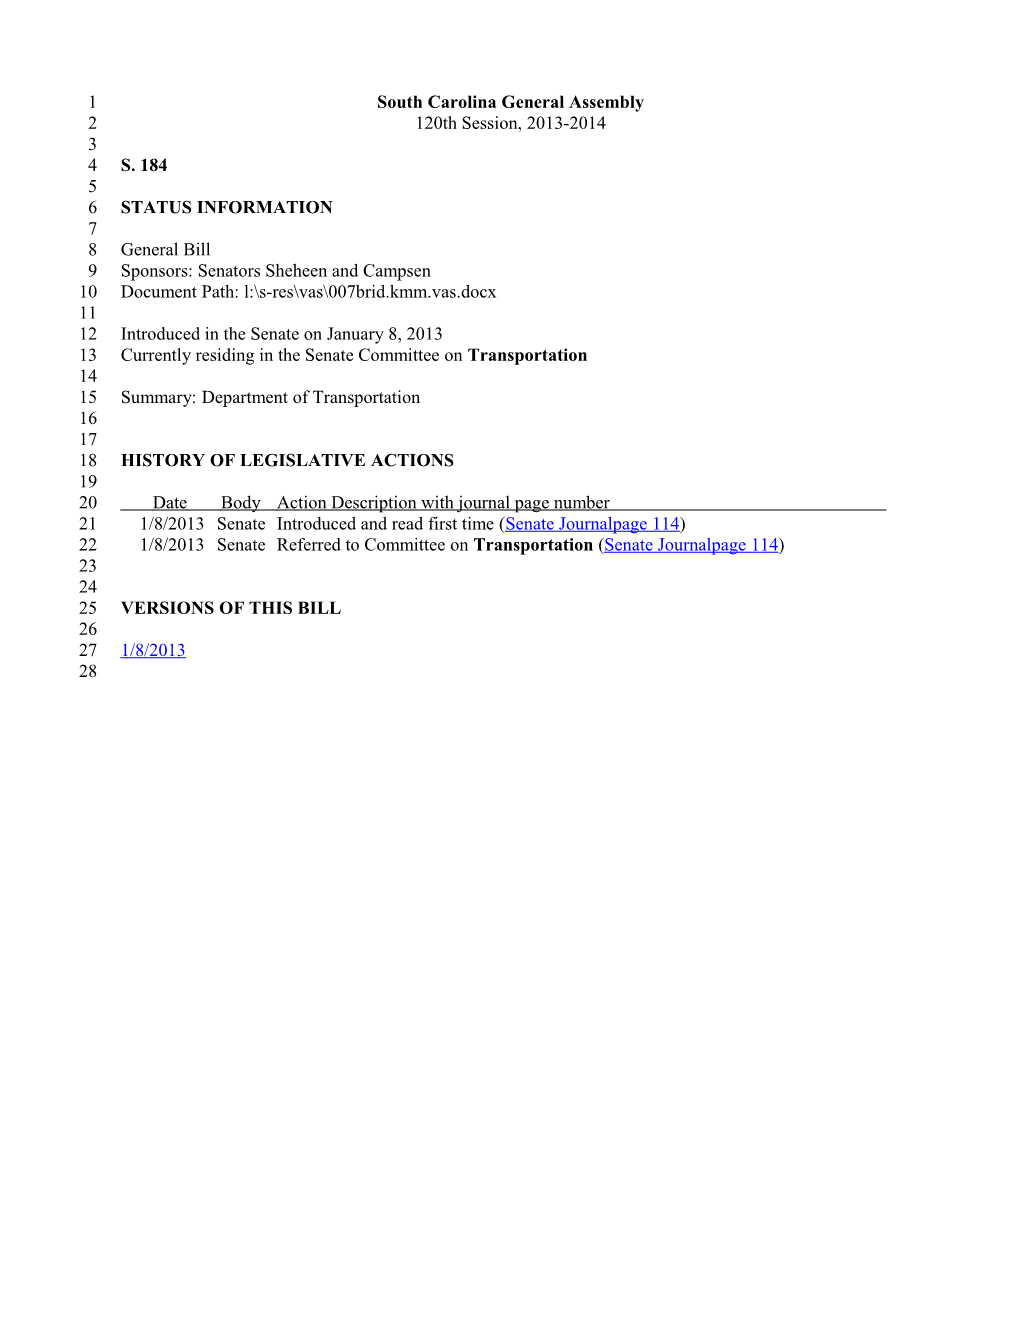 2013-2014 Bill 184: Department of Transportation - South Carolina Legislature Online